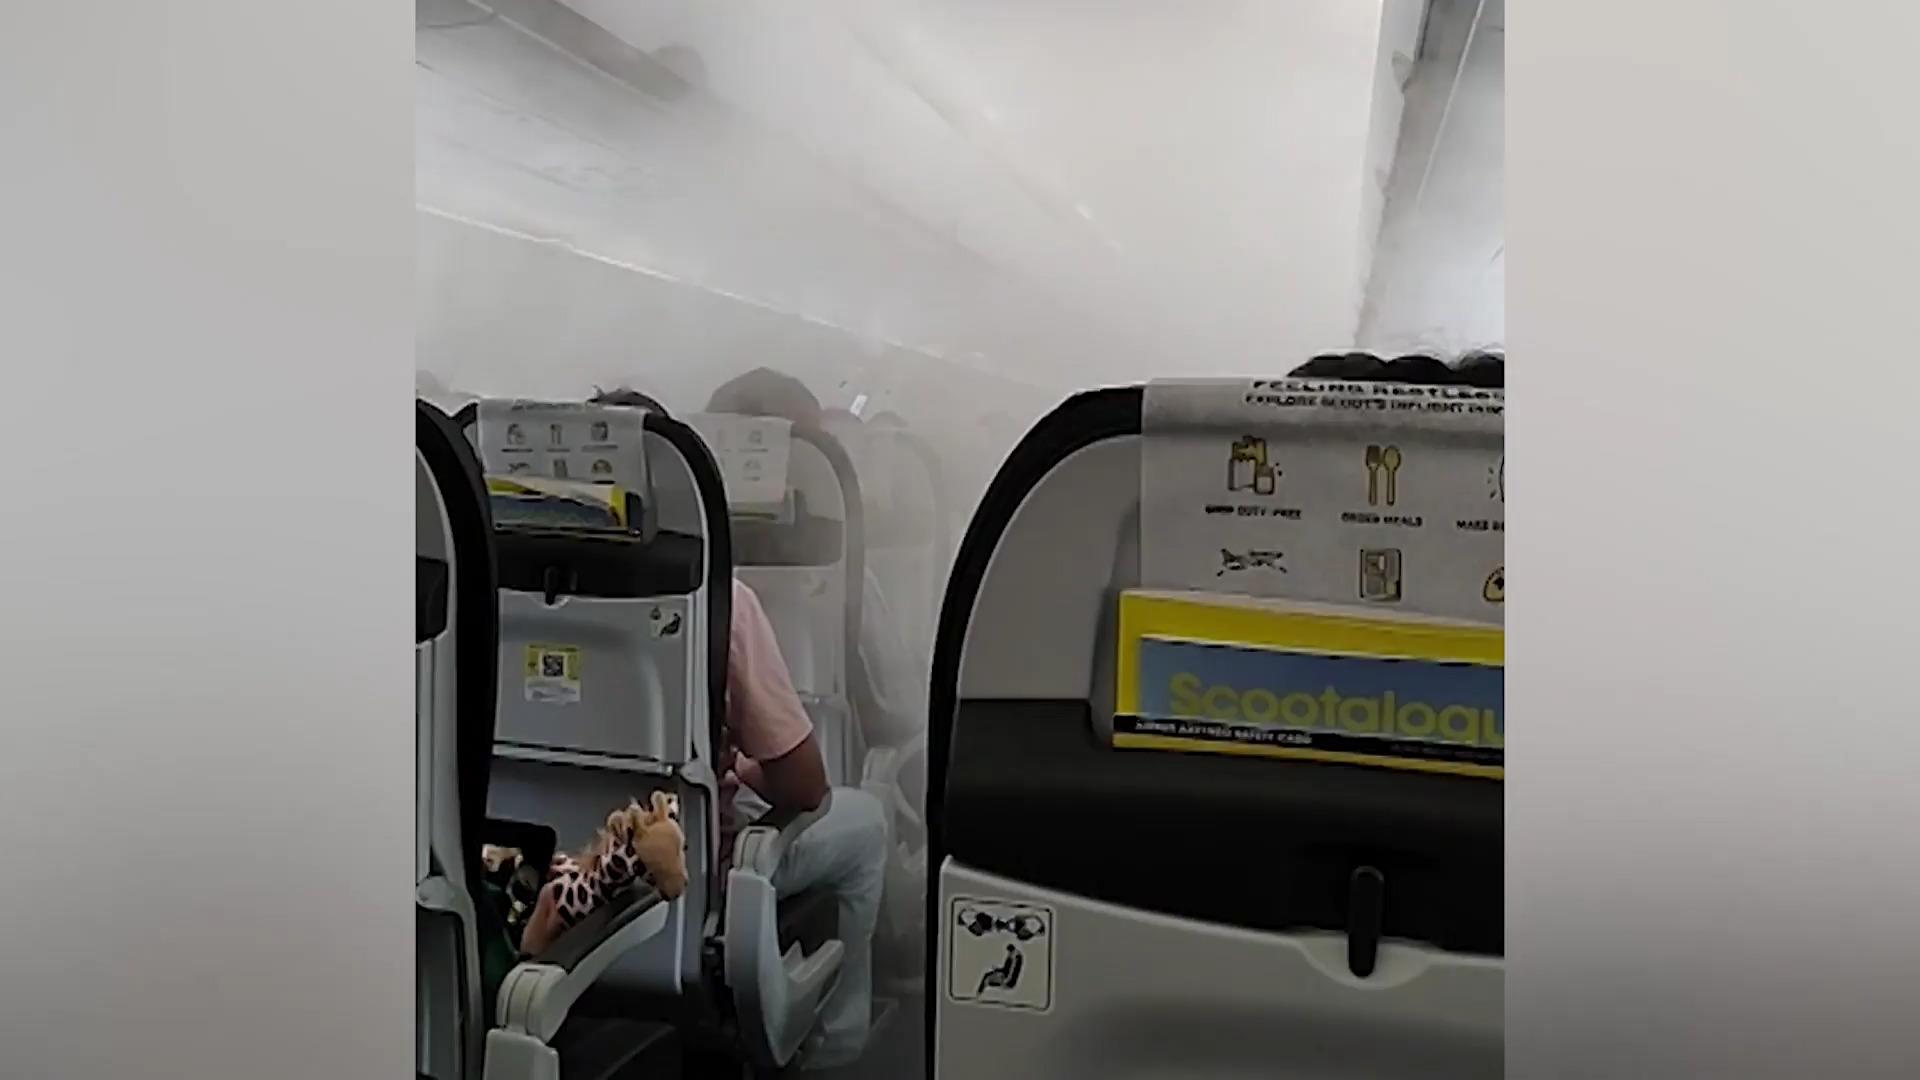 Weißer Nebel hüllt Flugzeugkabine ein! Passagiere geschockt